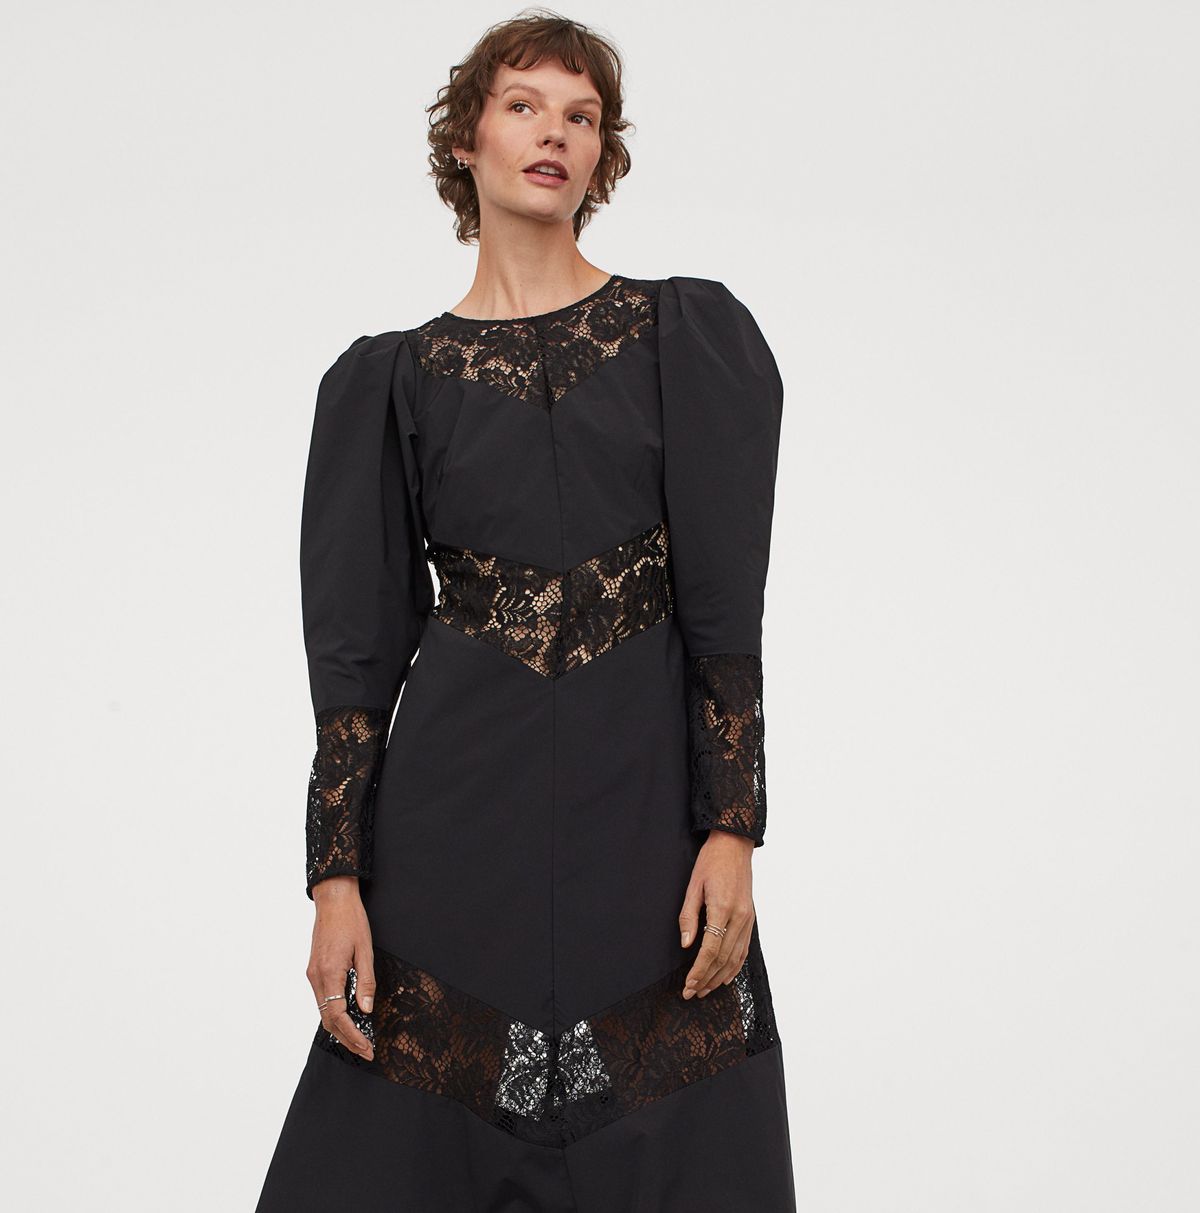 Más lejano hielo Suministro El vestido largo negro de H&M tan increíble como asequible